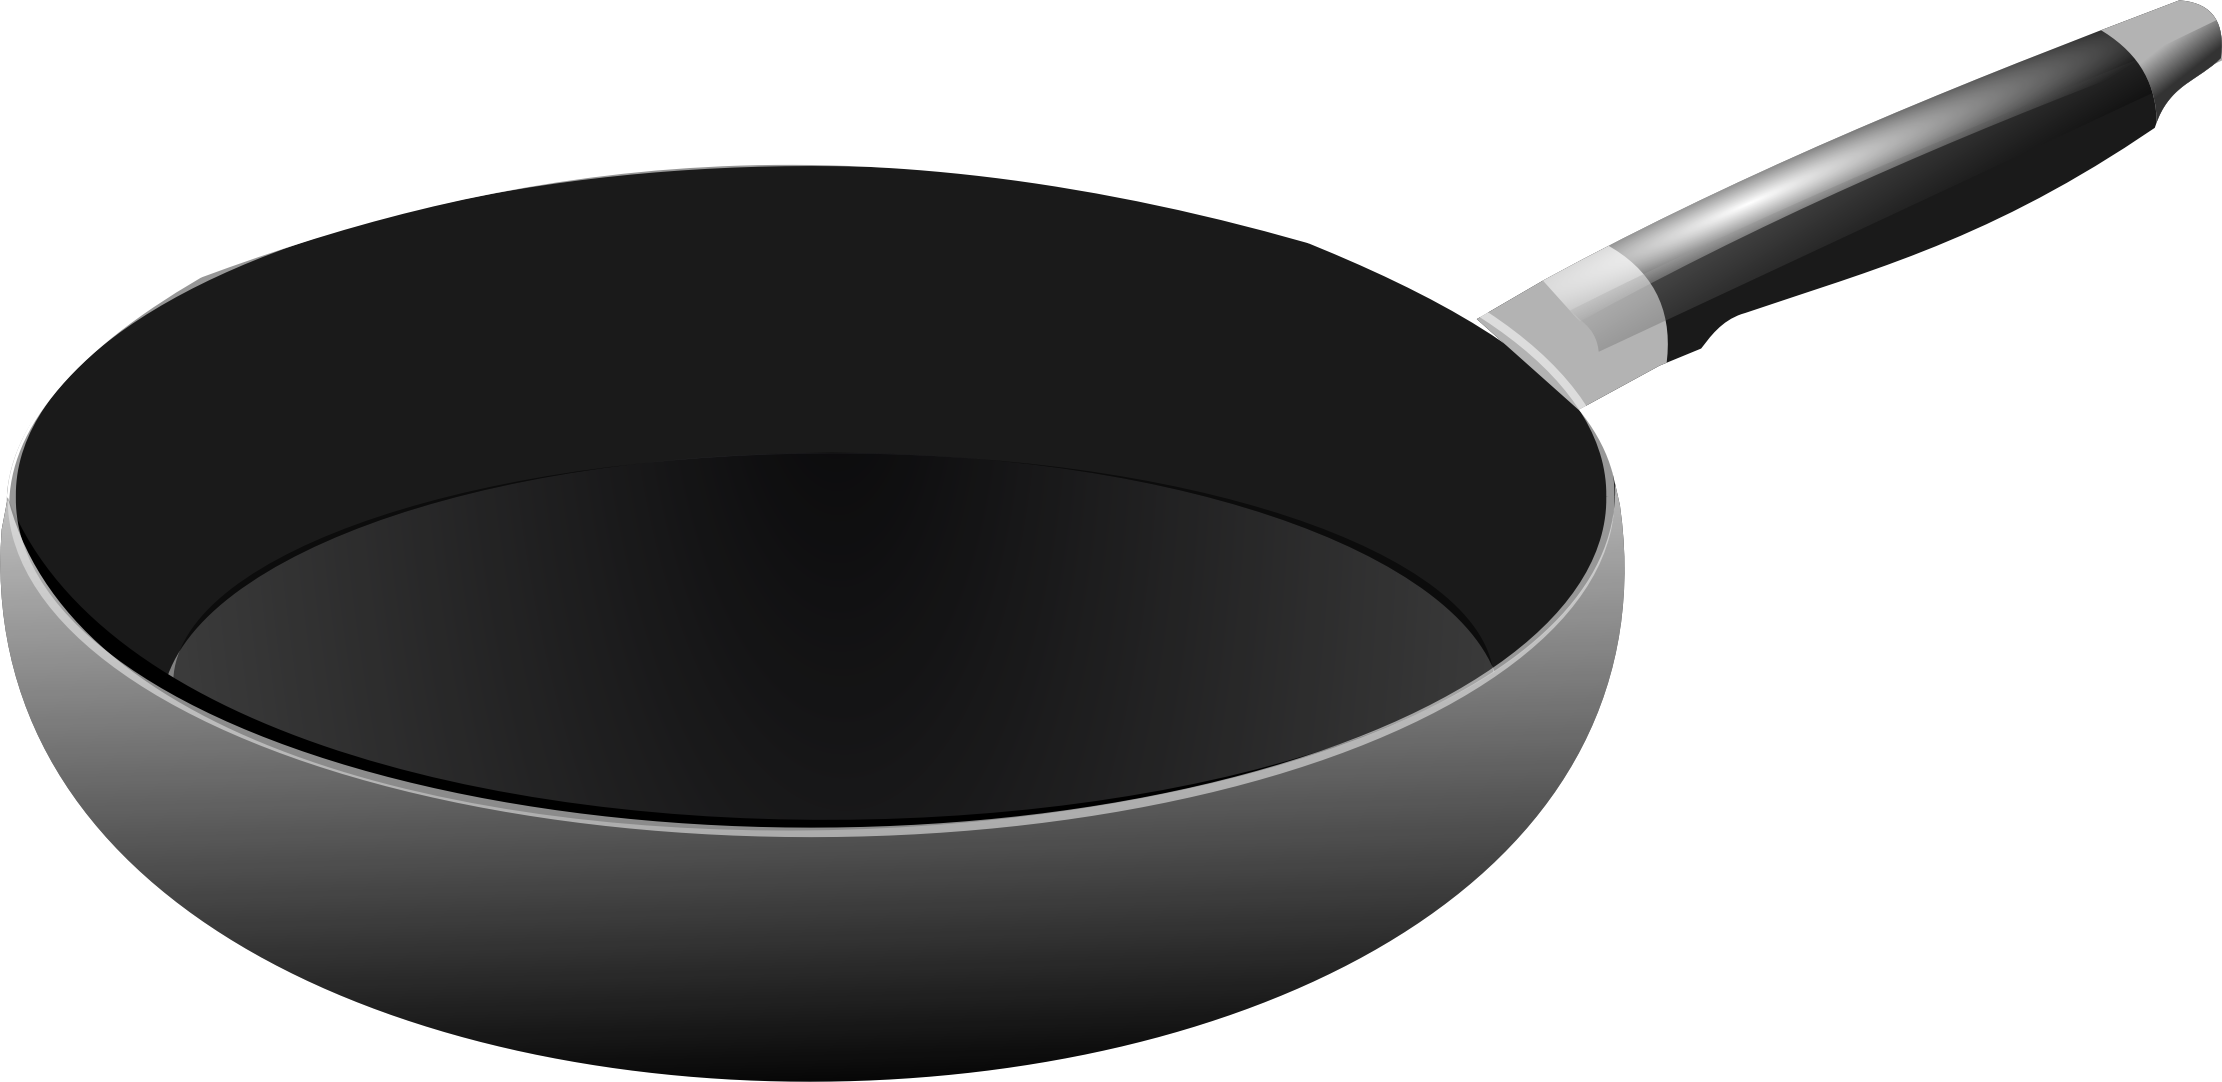 Cooking Pan Free Download Png PNG Image